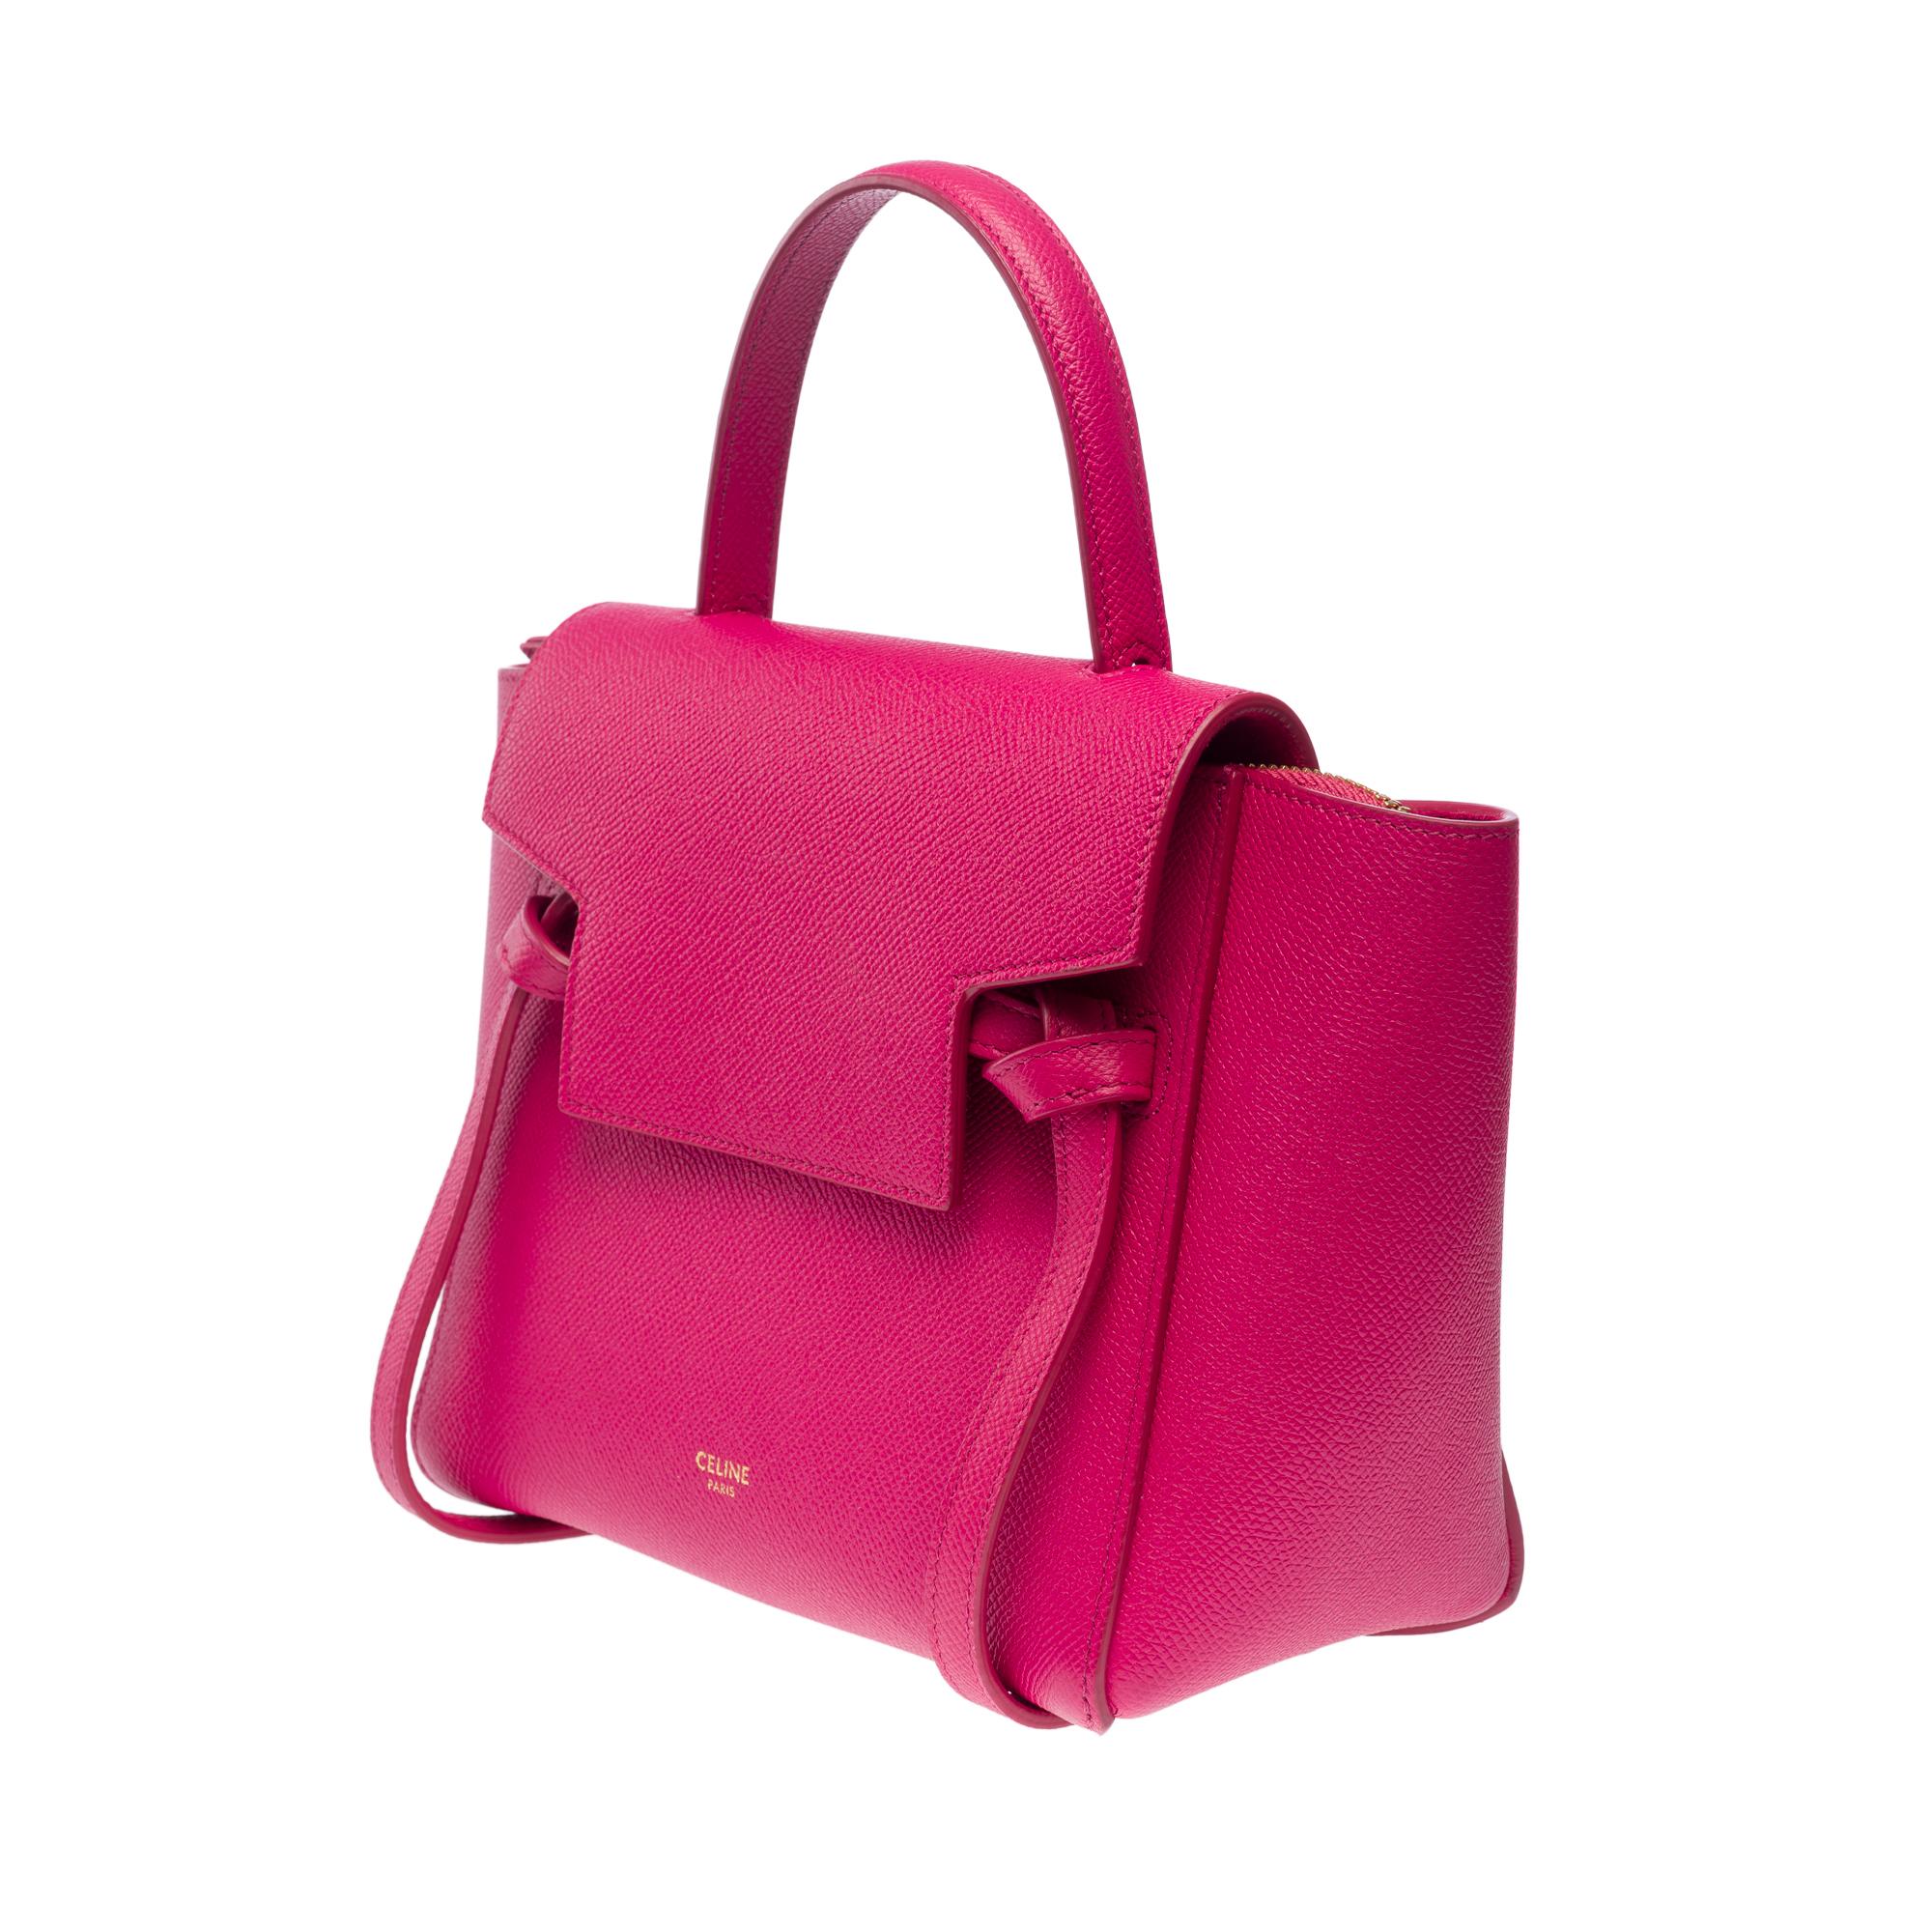 Celine Belt Nano handbag strap in pink calf leather, GHW 2